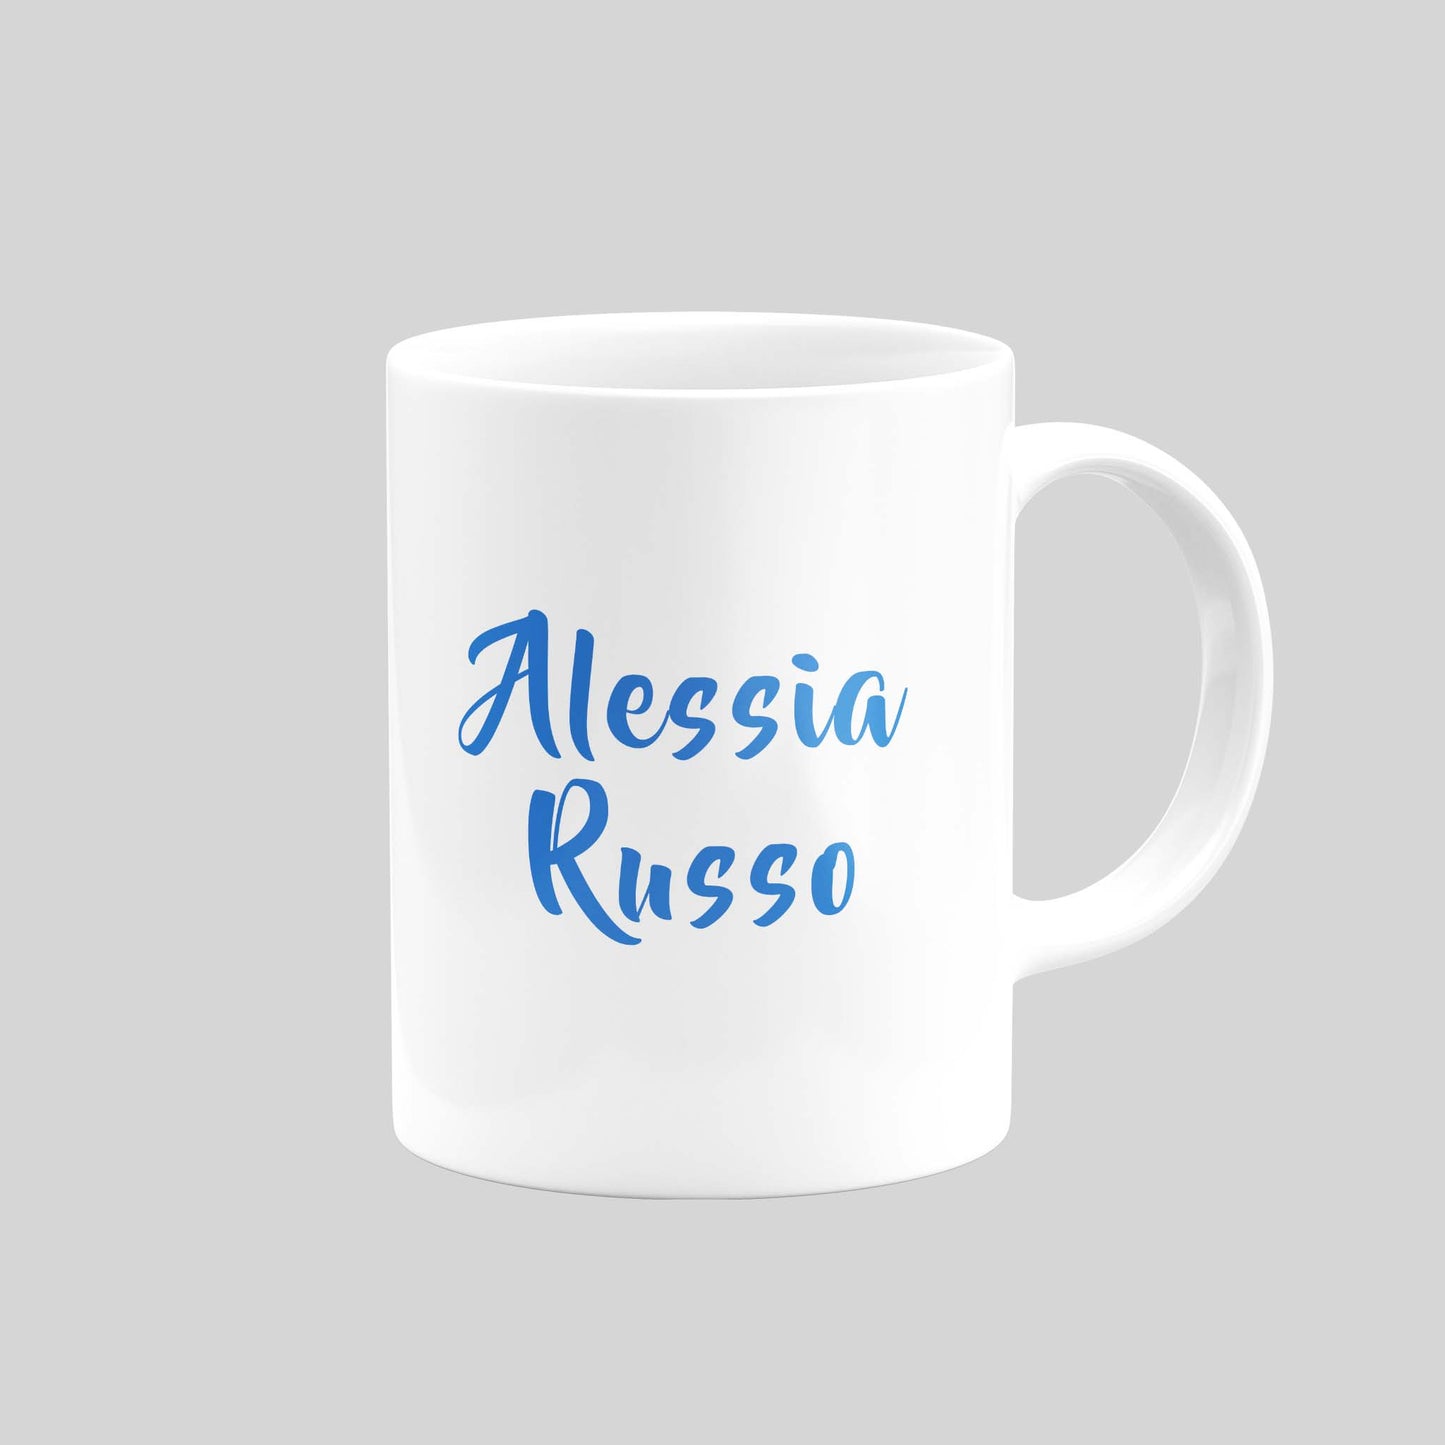 Alessia Russo Mug